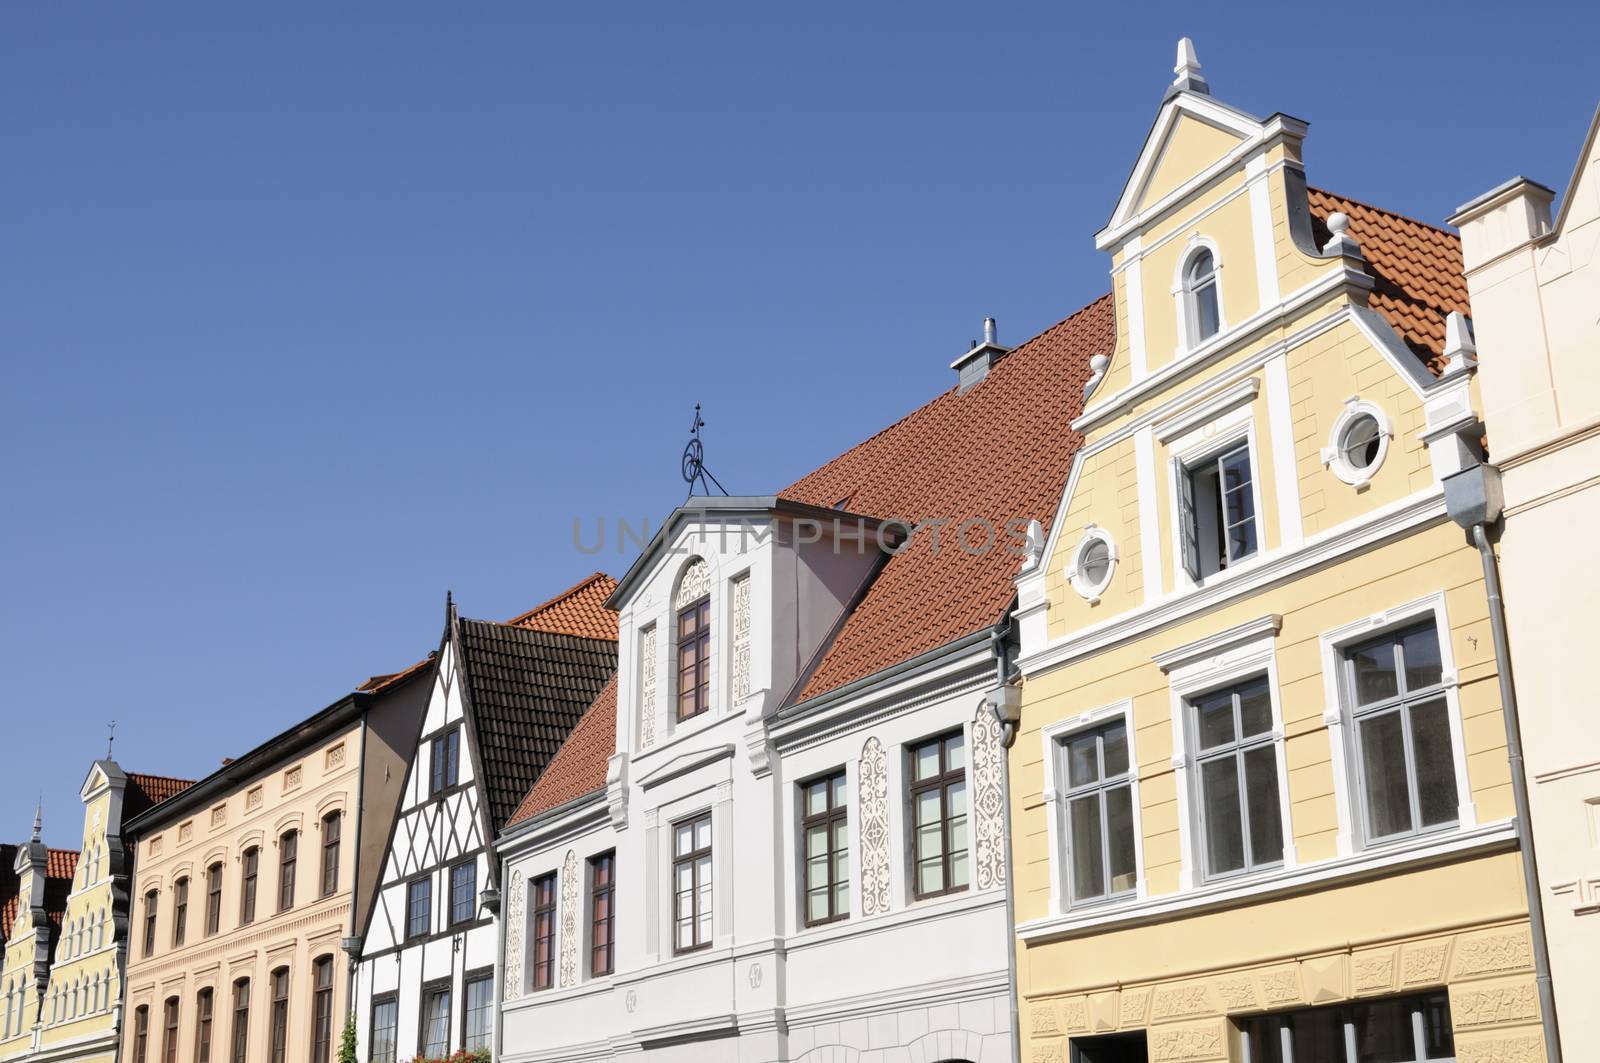 Row of houses in Wismar, Mecklenburg-Western Pomerania, Germany.